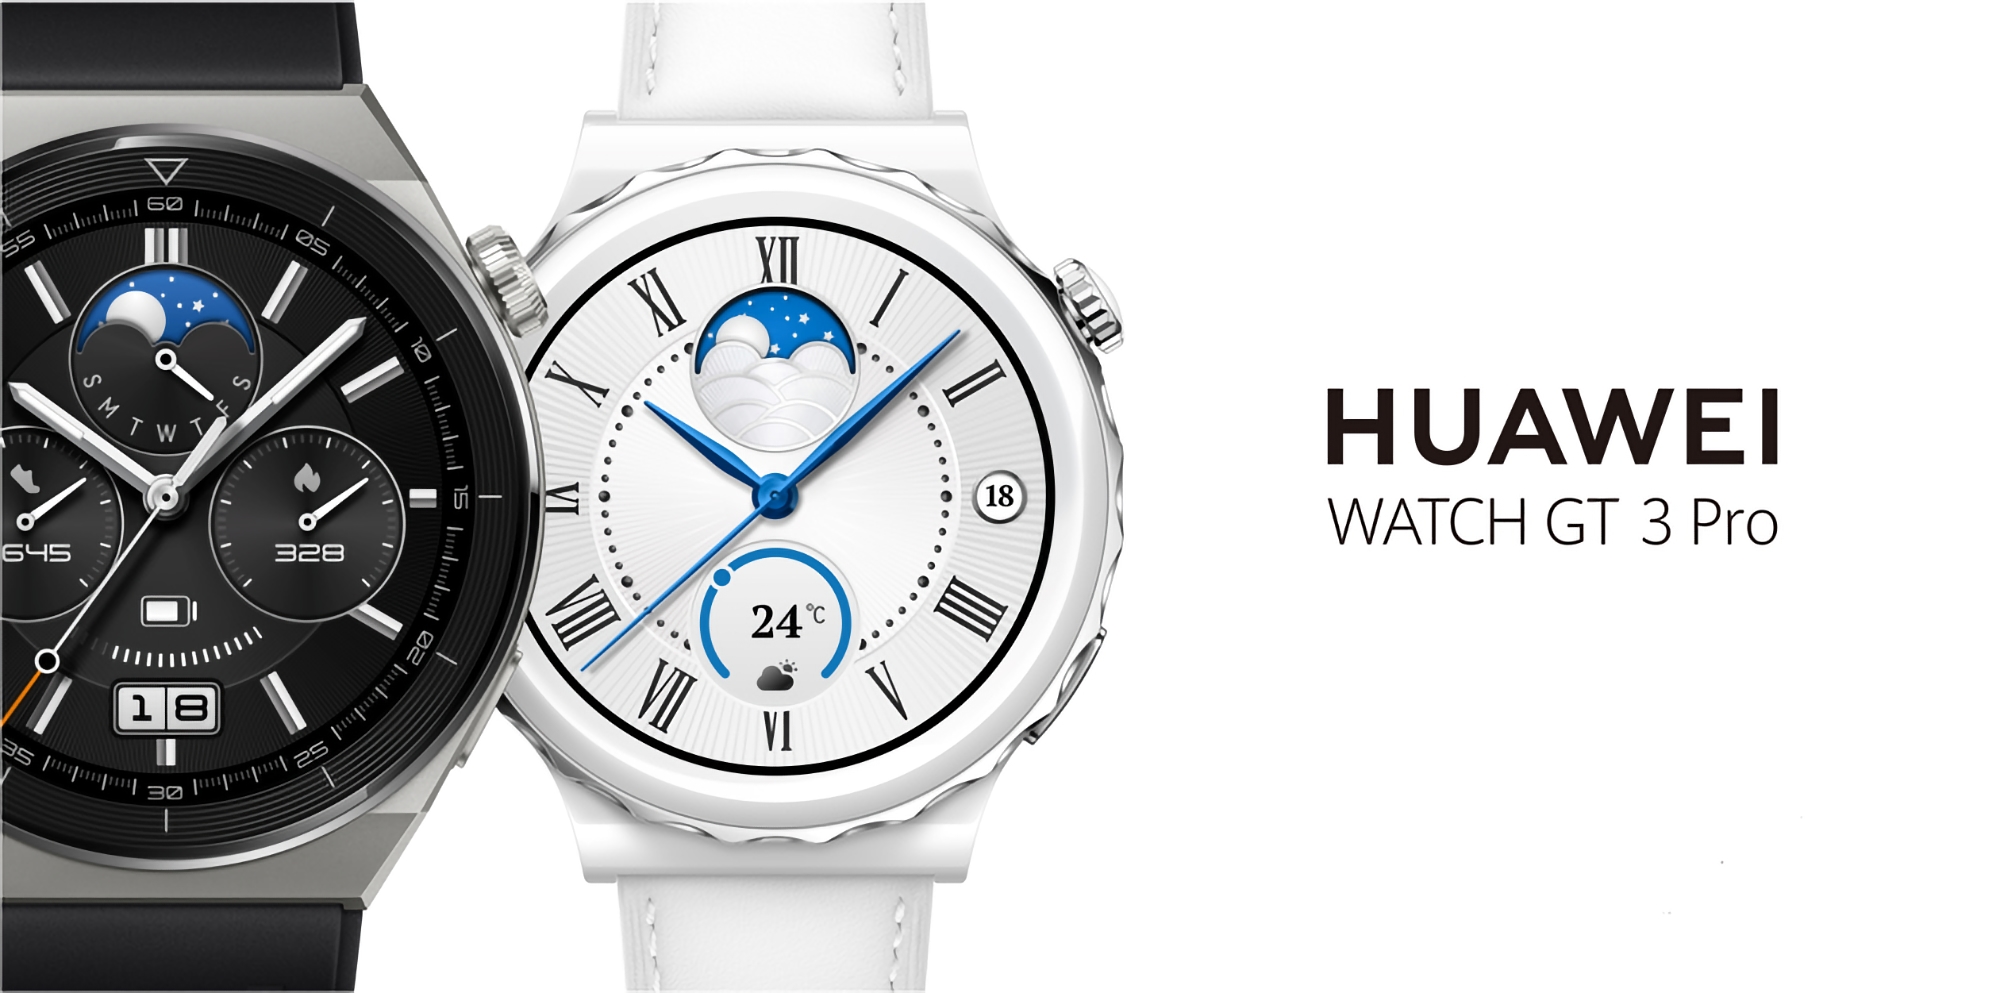 Huawei Watch GT 3 Pro ma teraz wskaźnik wytrzymałości i wydajności biegu 